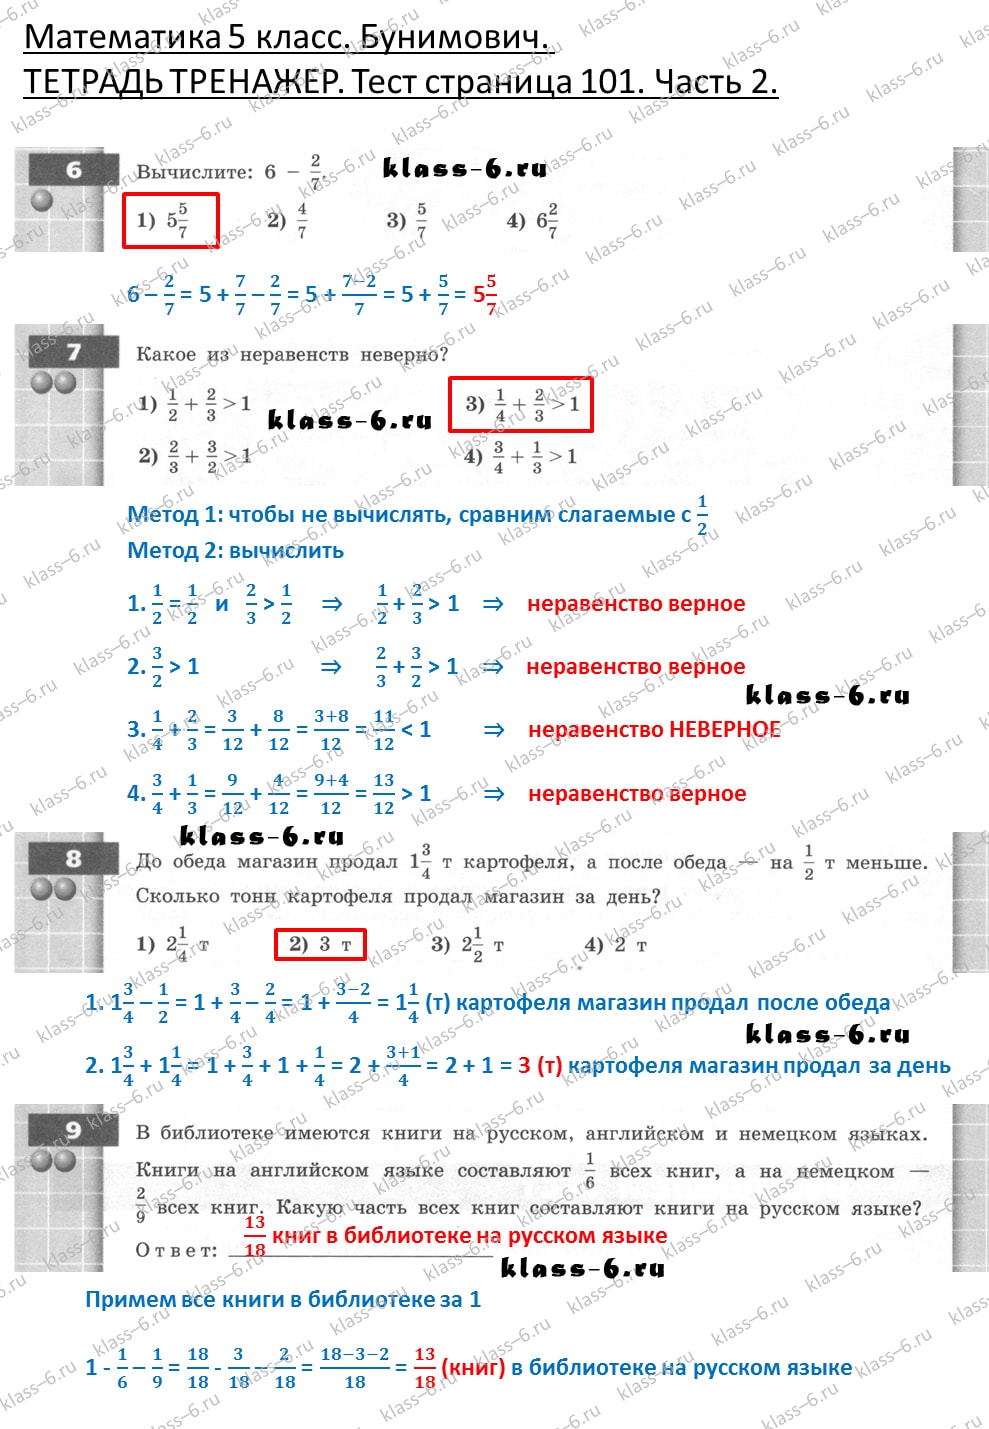 решебник и гдз по математике тетрадь тренажер Бунимович 5 класс тесты страница 101 (2)